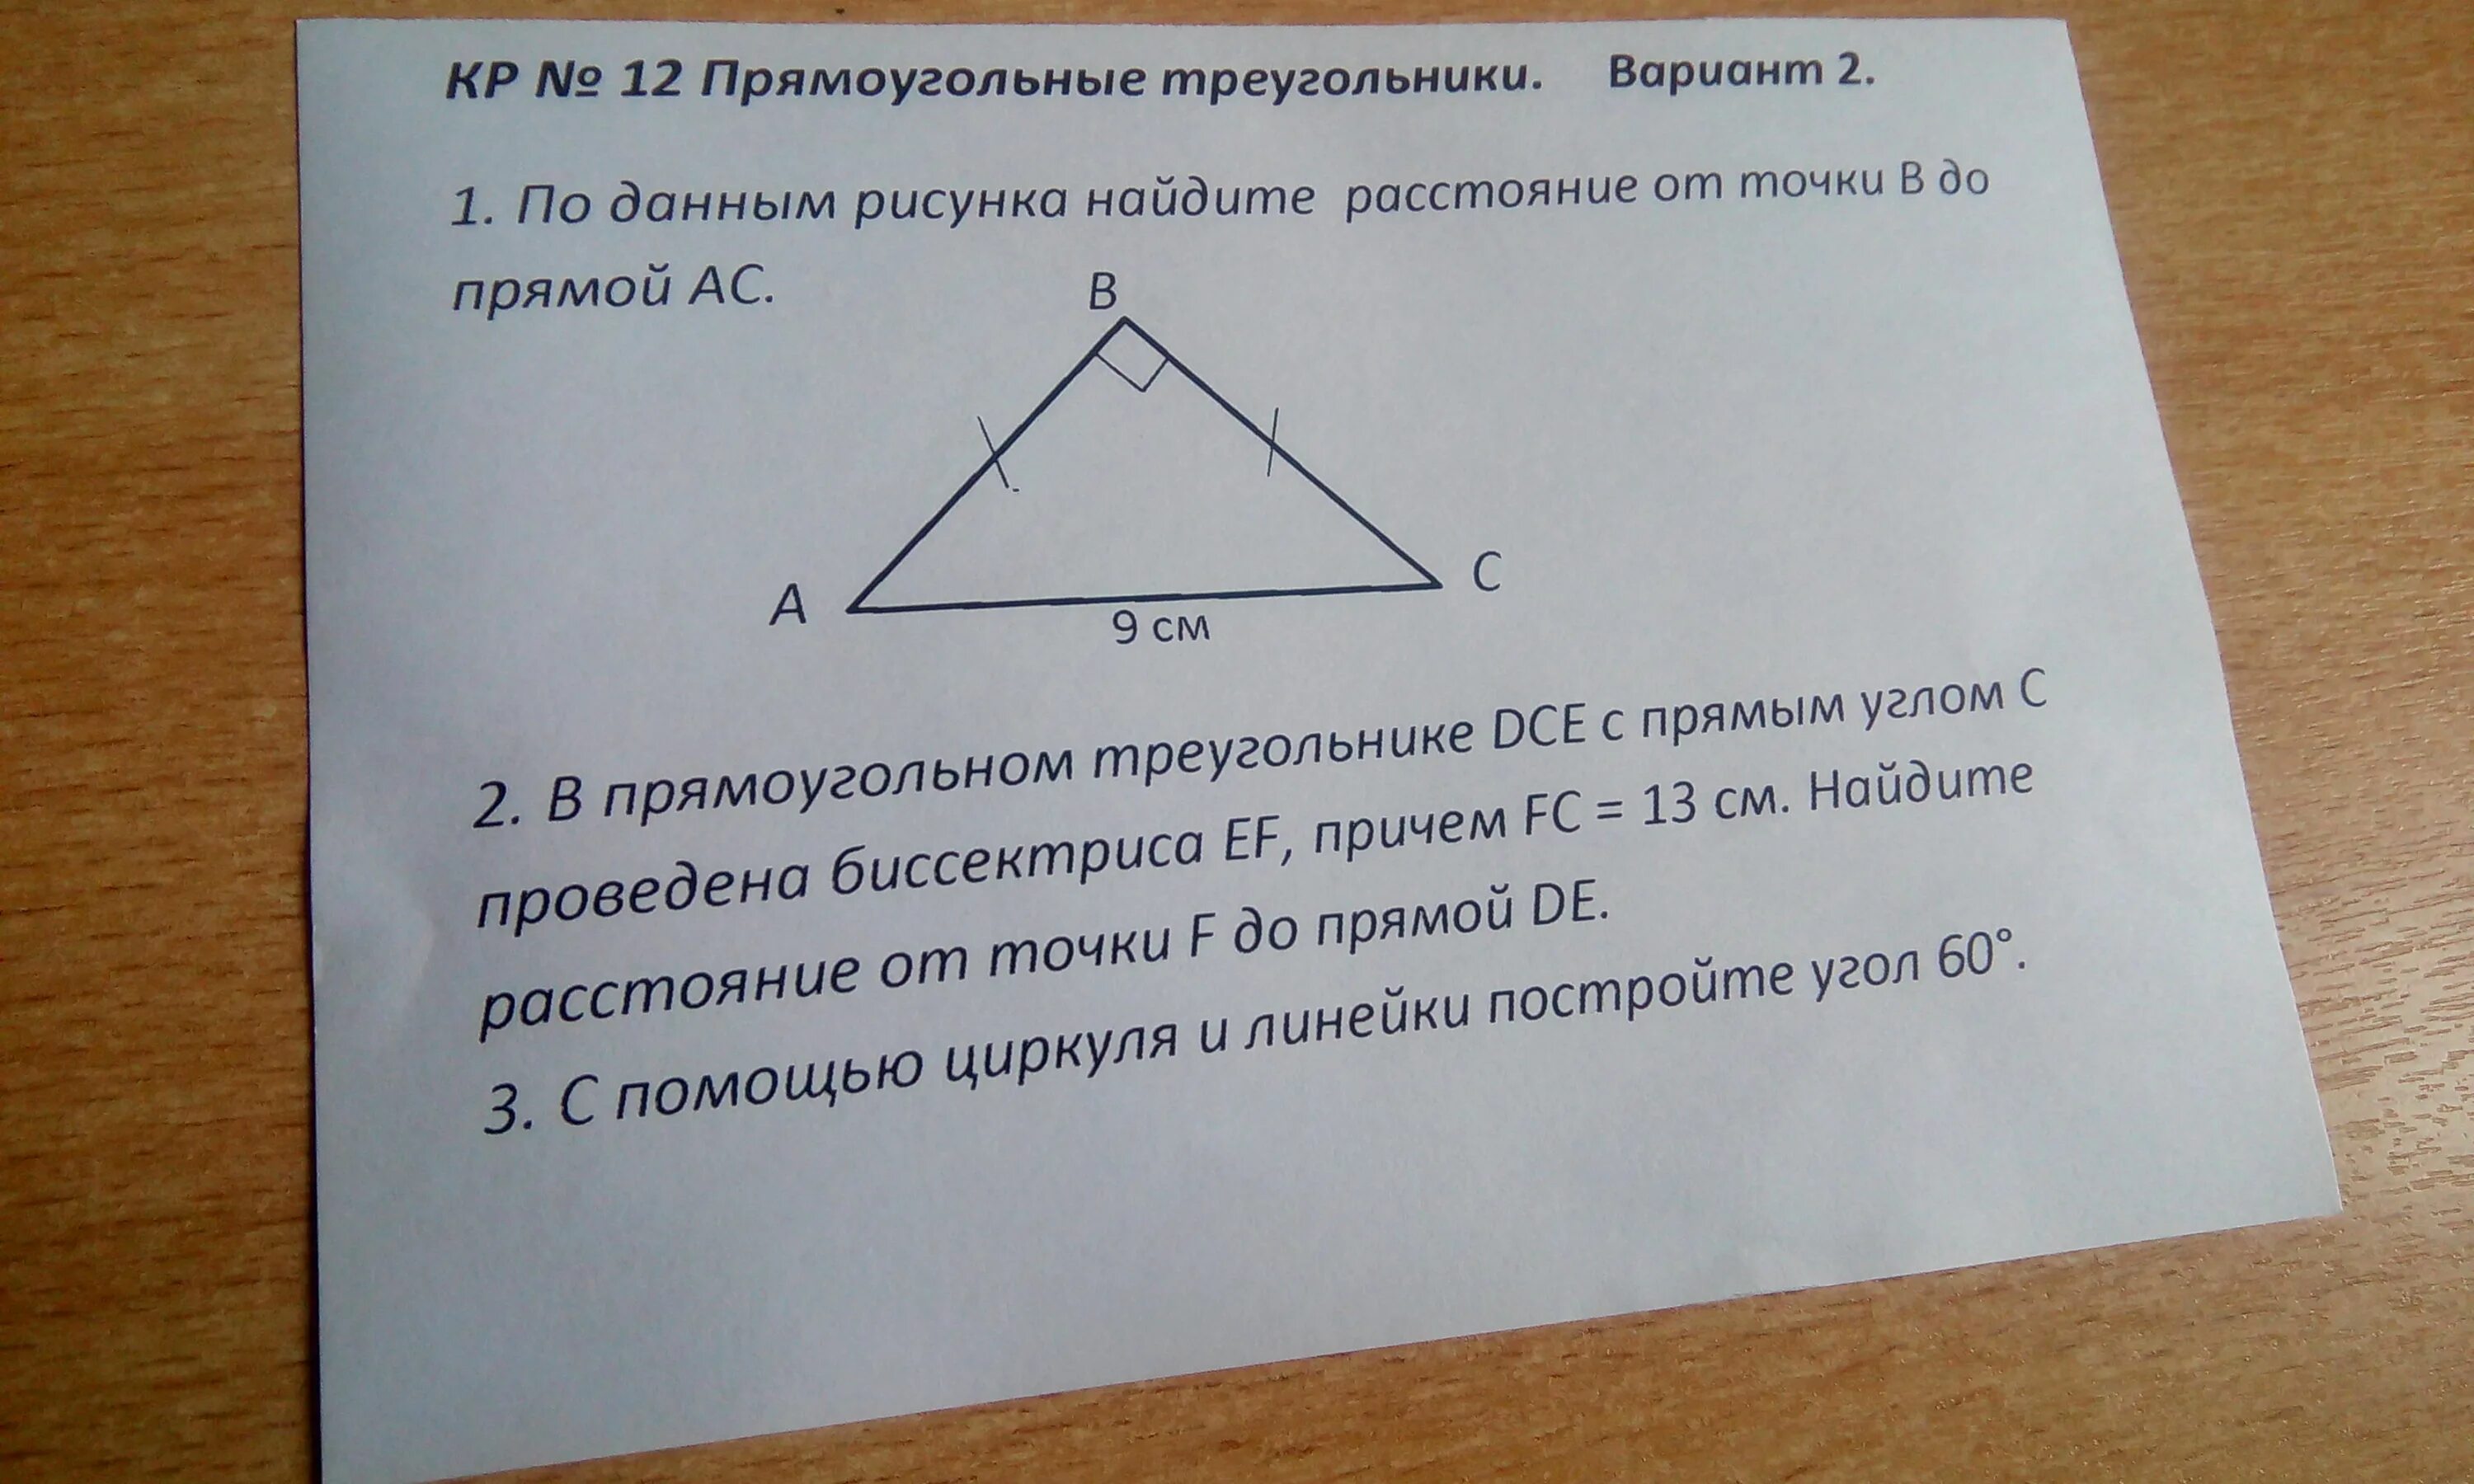 В прямоугольном треугольнике дсе с прямым. В прямоугольном треугольнике DCE С прямым углом. В прямоугольном треугольнике дсе. В прямоугольном треугольнике DCE С прямым углом c. В прямоугольном треугольнике дсе с прямым углом с.